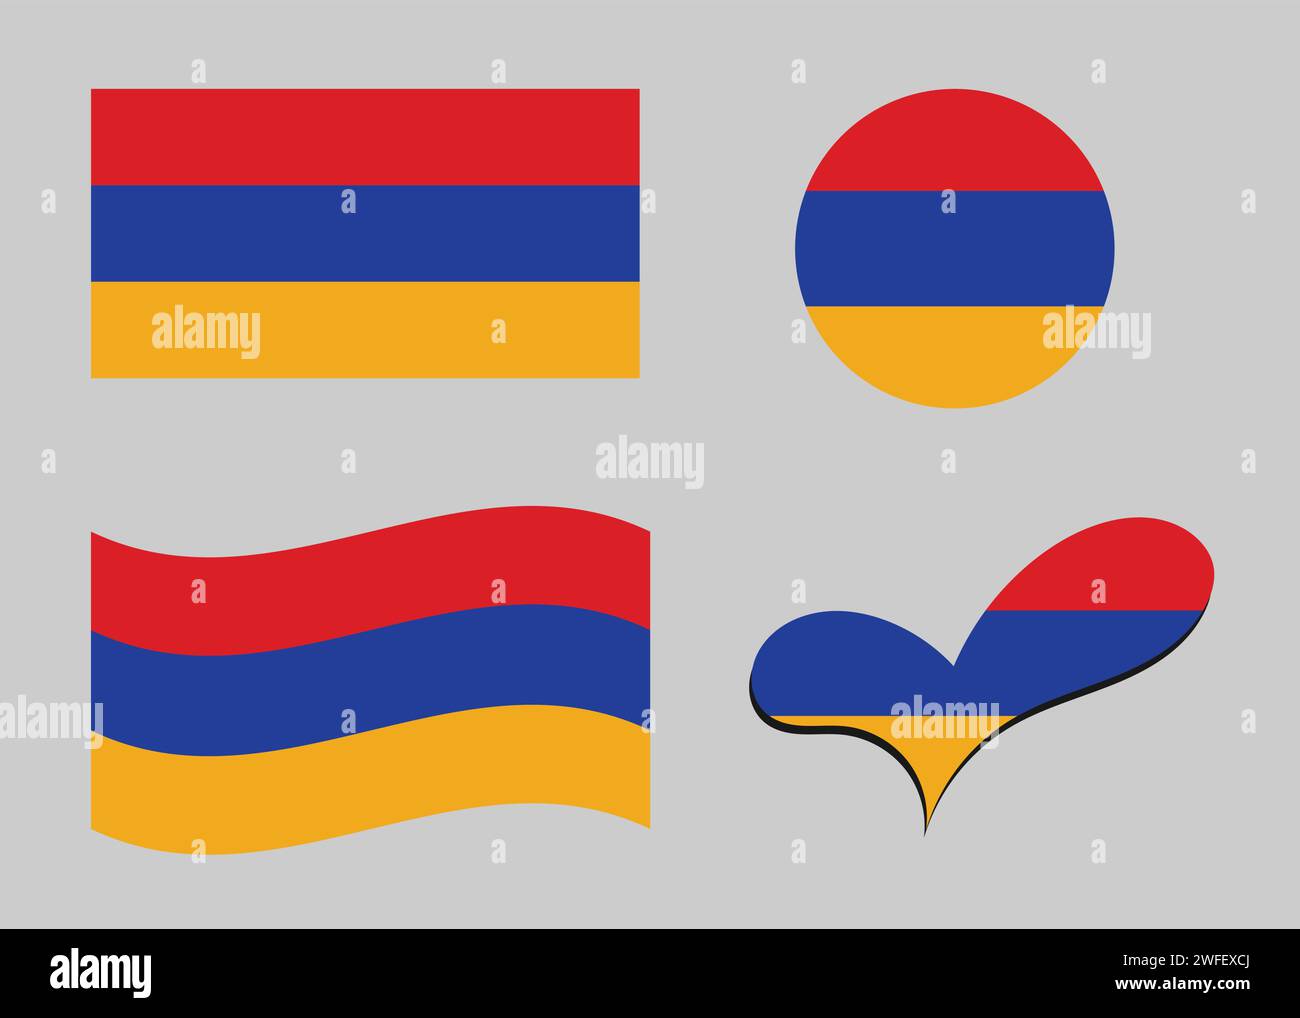 Flag of Armenia. Armenia flag in heart shape. Armenia flag in circle shape. Country flag variations Stock Vector